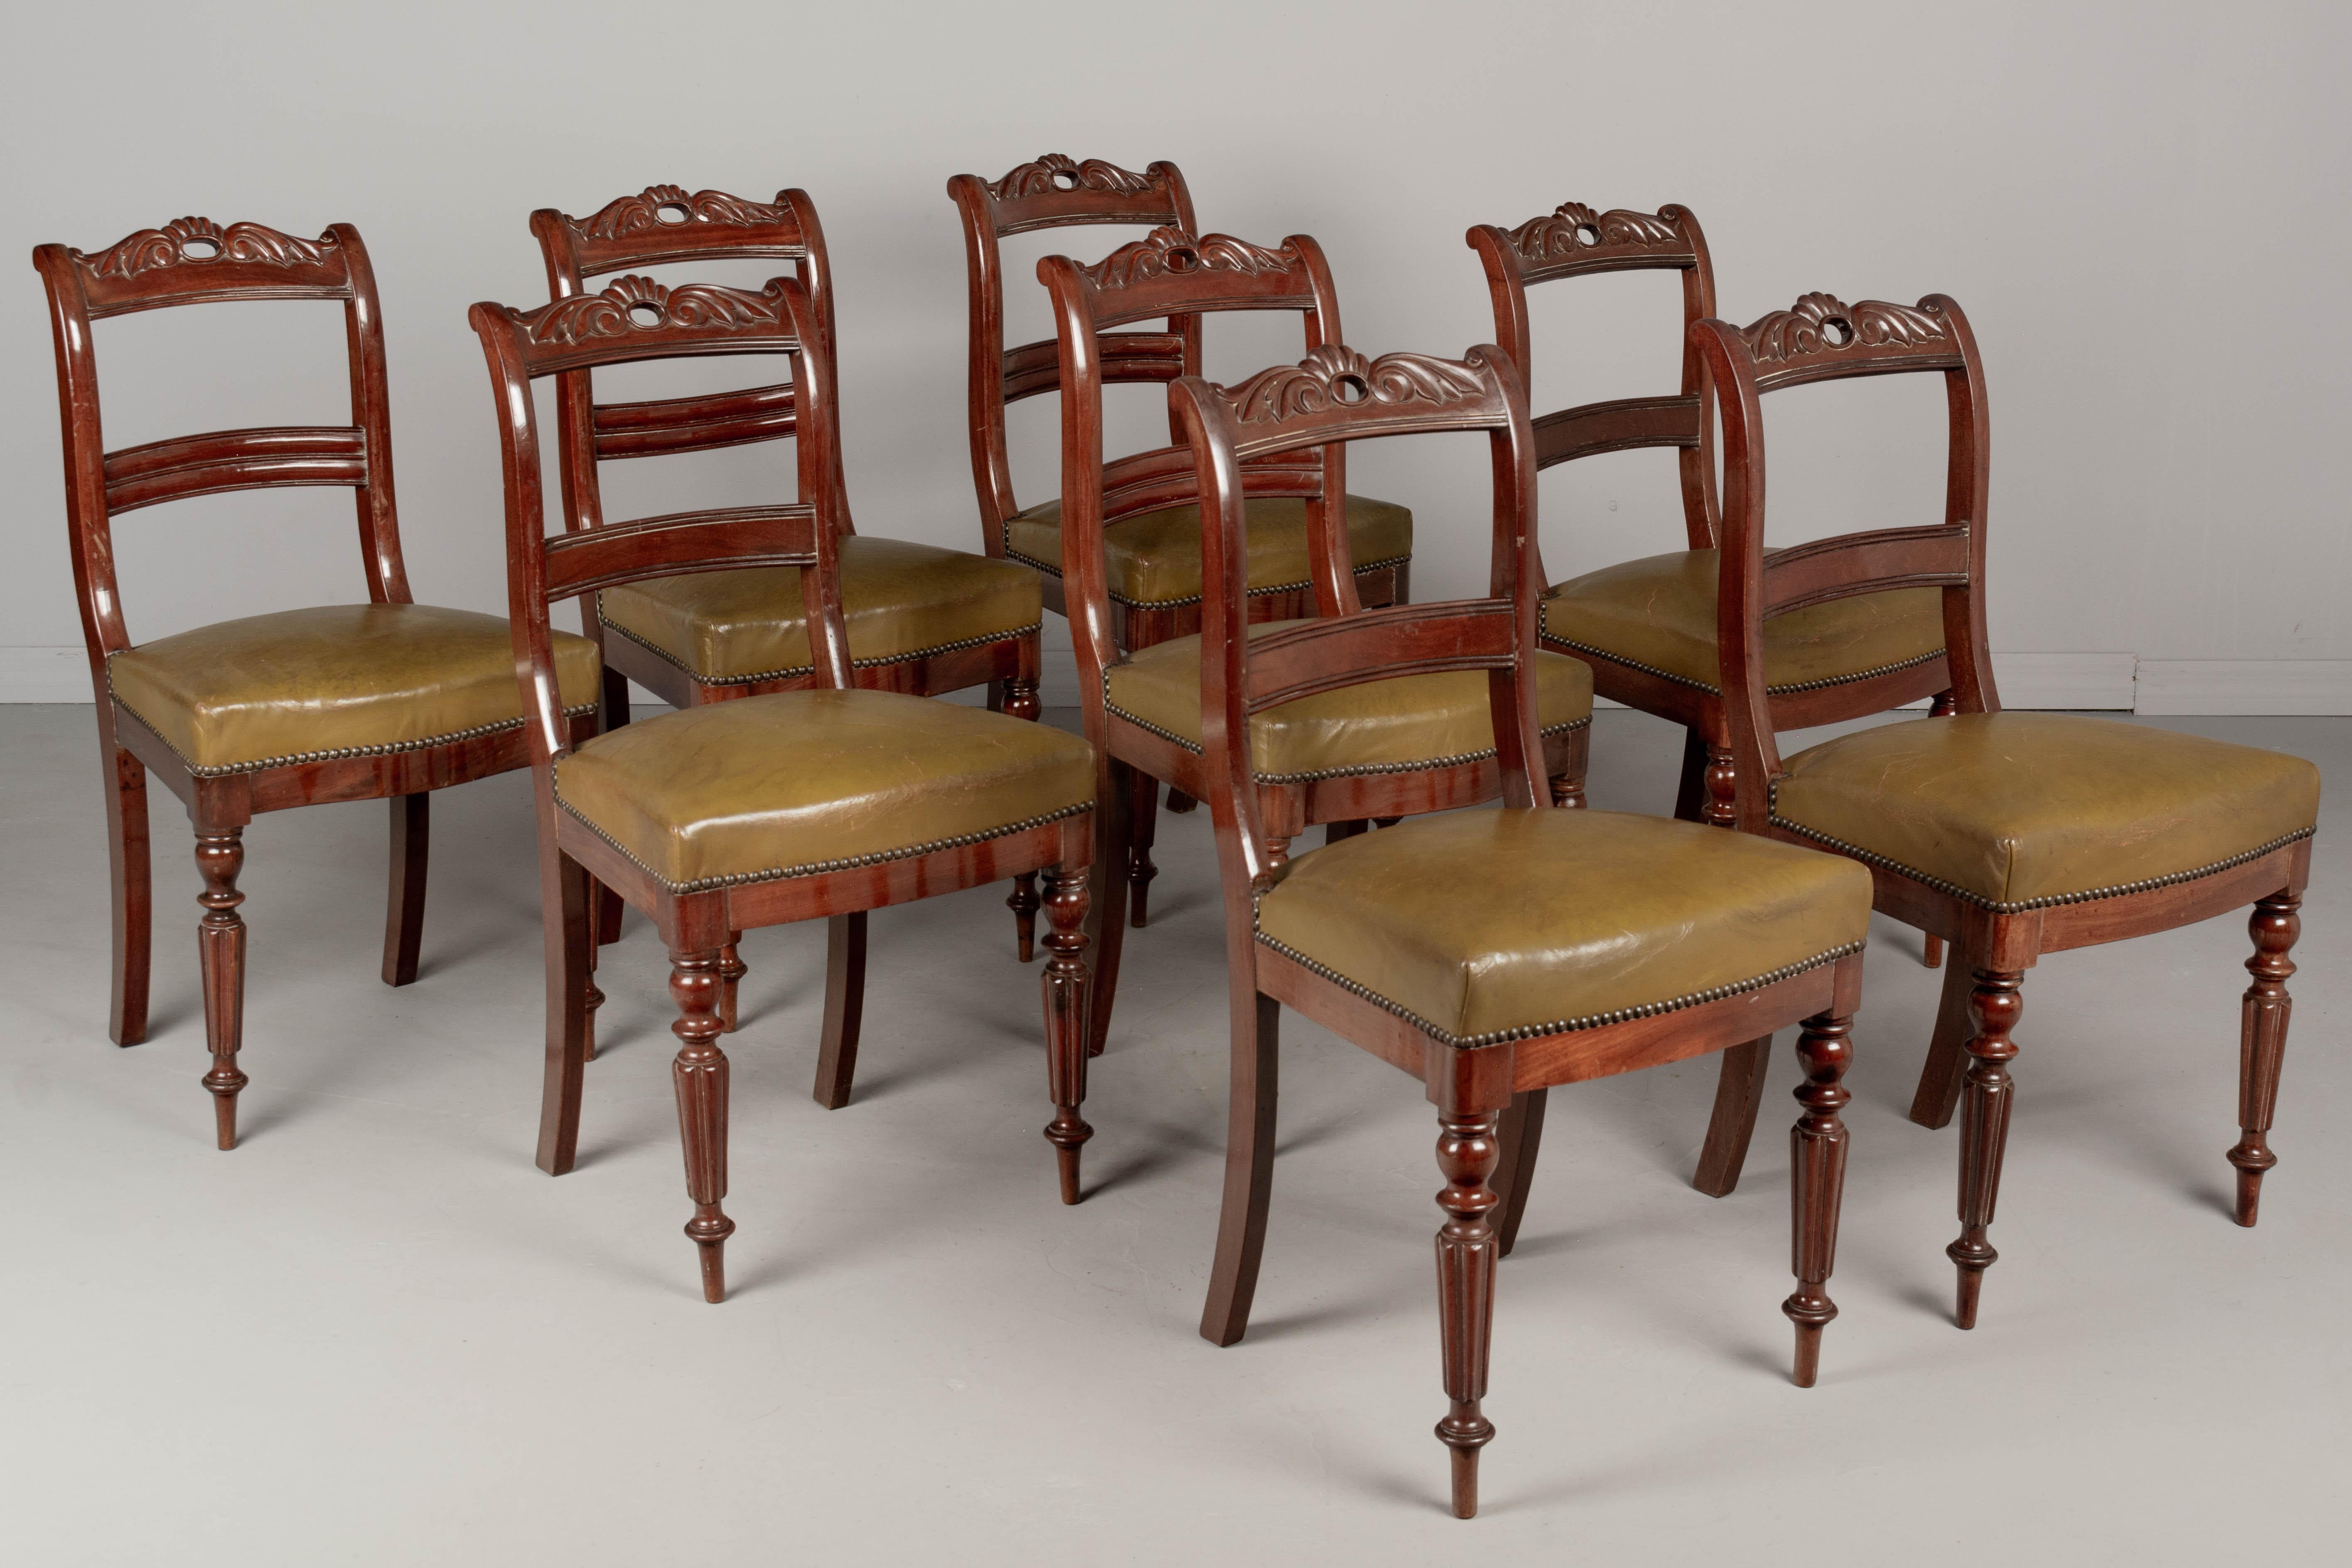 Un ensemble de huit chaises de salle à manger en acajou de style Regency anglais, joliment détaillées avec des pieds avant cannelés tournés et un dossier incurvé avec une décoration sculptée. Robuste et bien construit. Revêtement en cuir d'origine